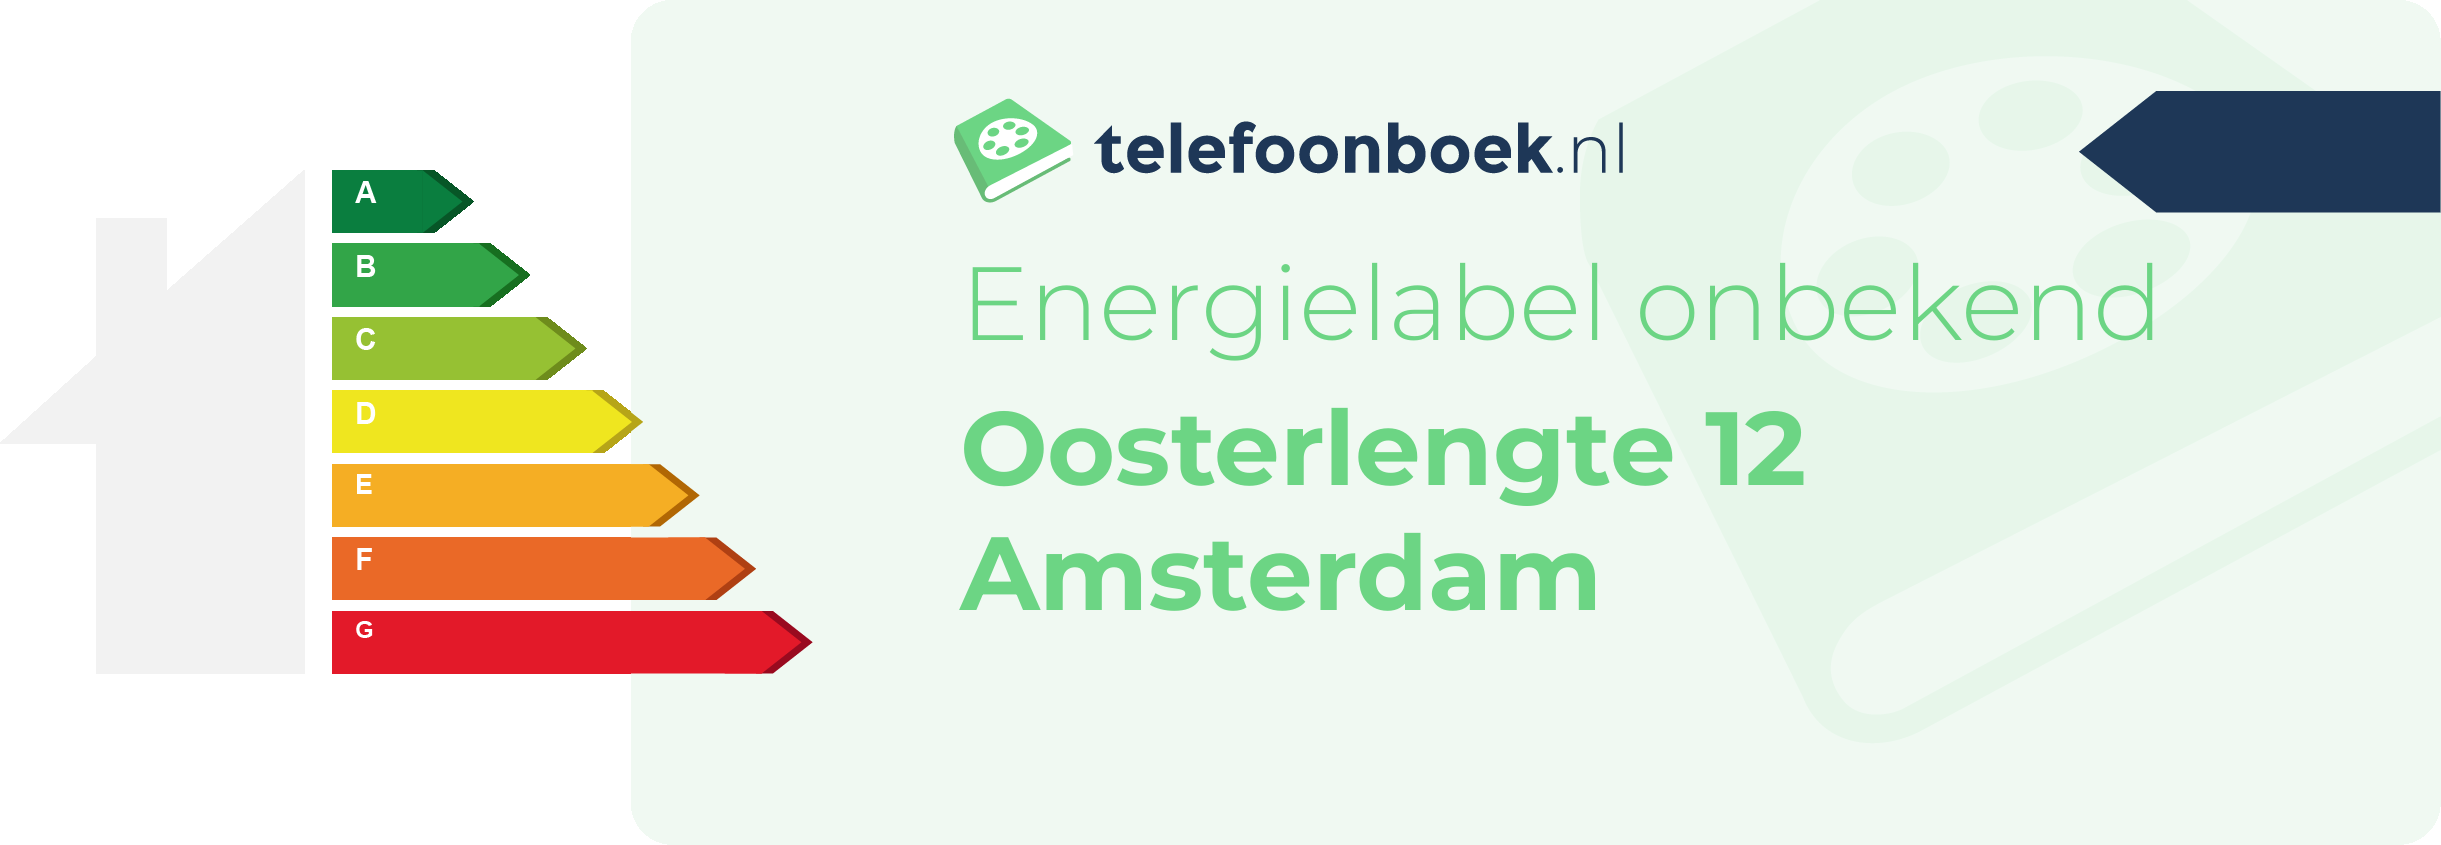 Energielabel Oosterlengte 12 Amsterdam